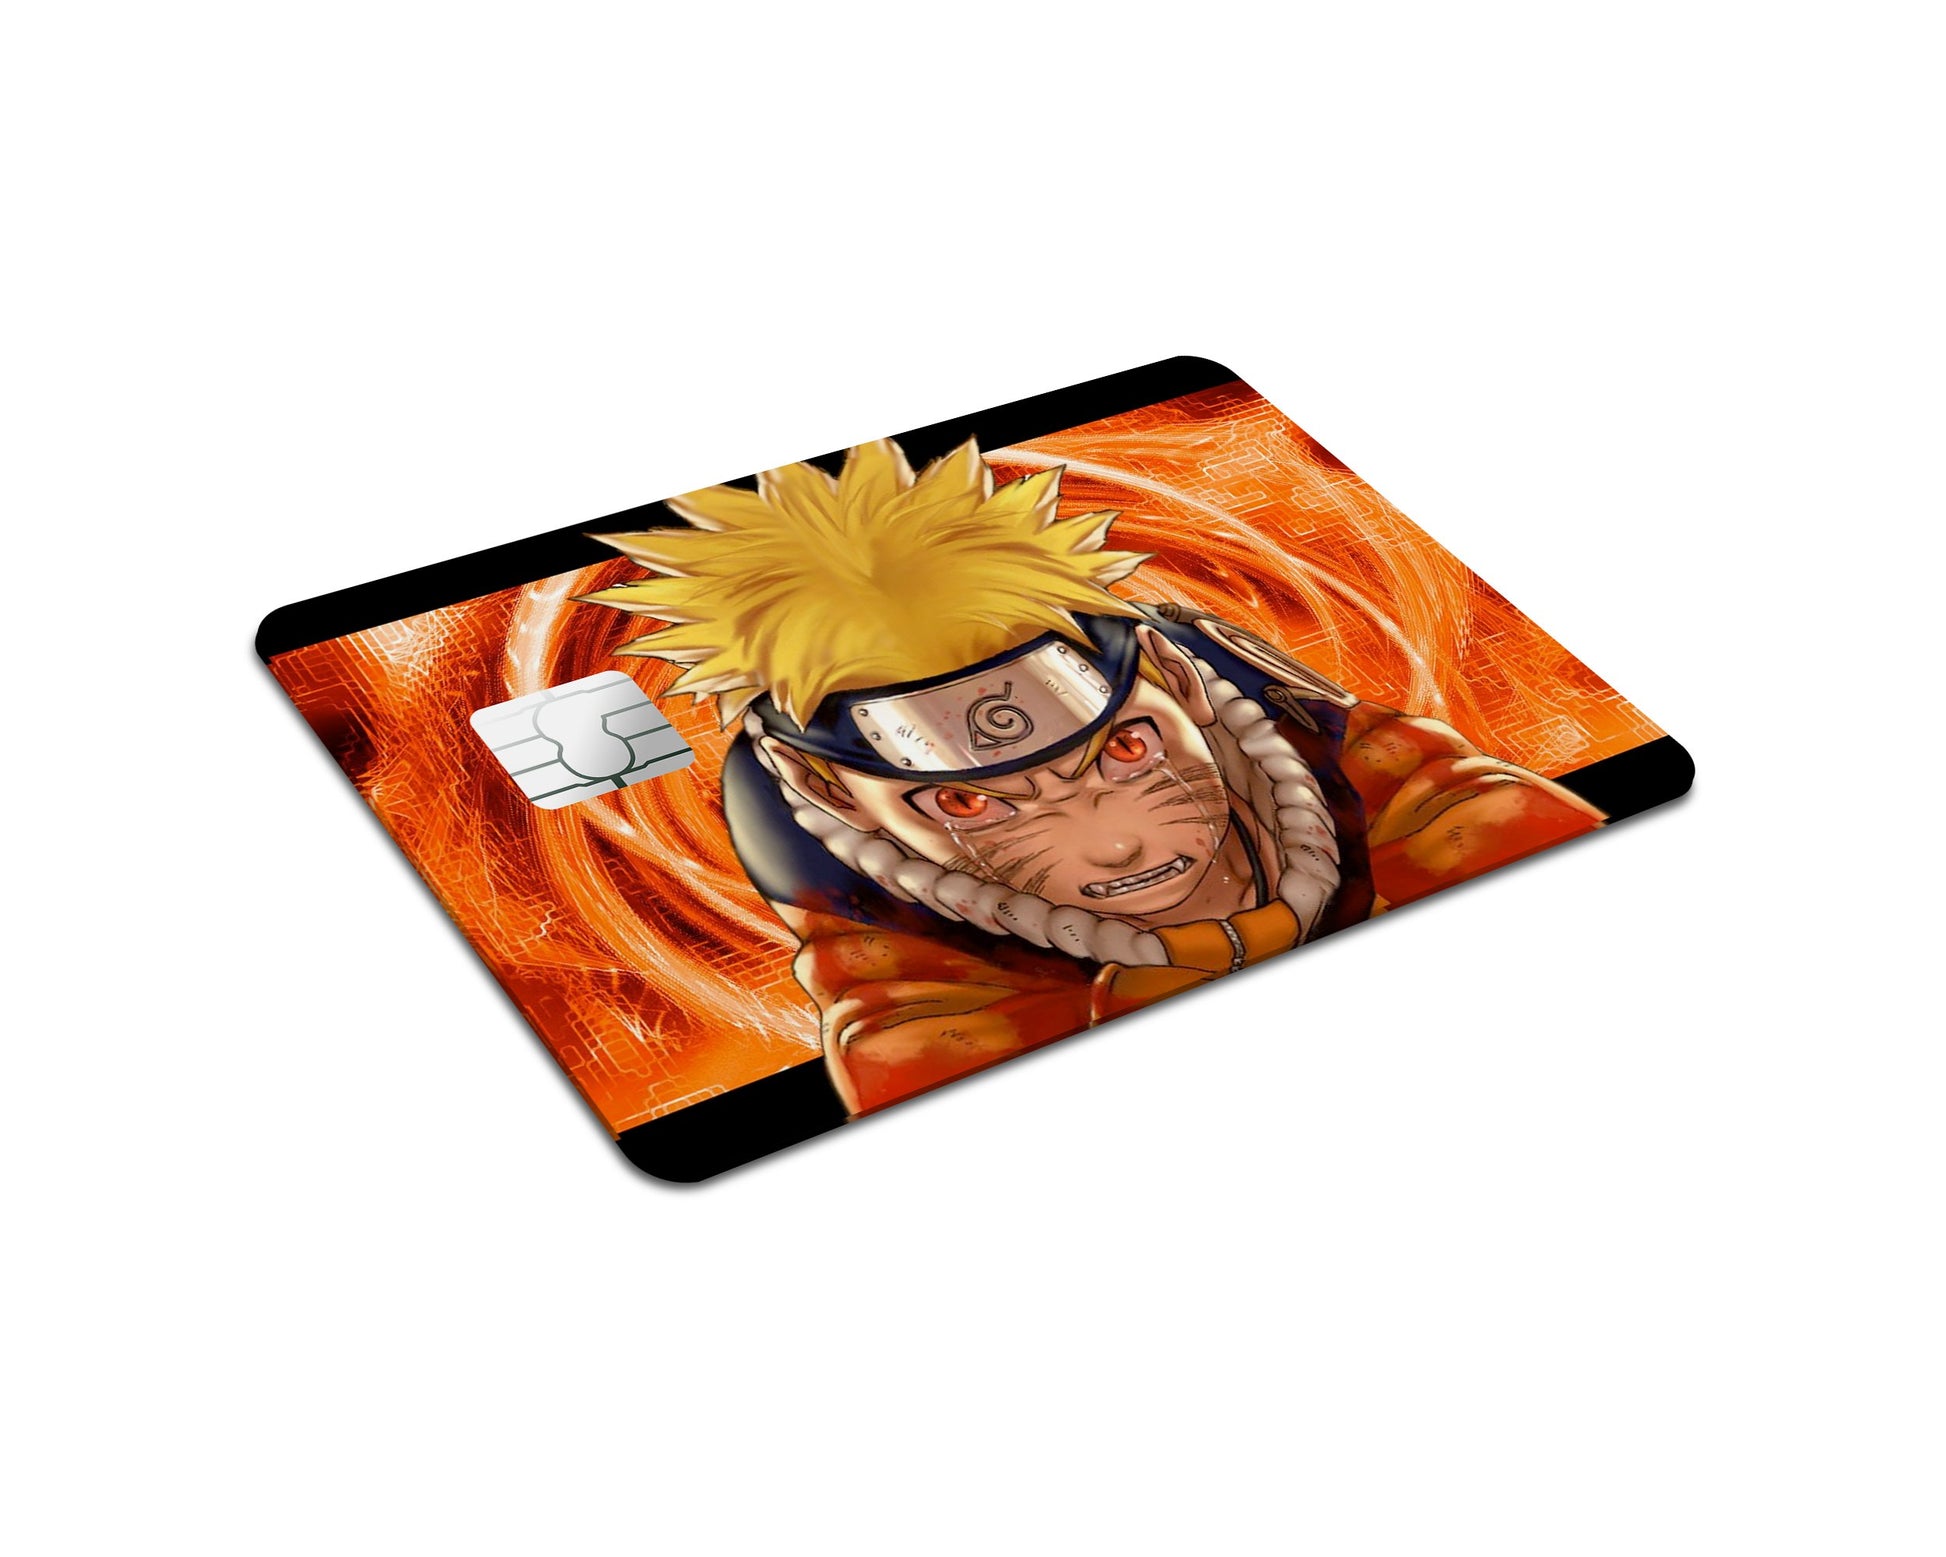 Anime Town Creations Credit Card Naruto Nine-Tail Full Skins - Anime Naruto Credit Card Skin